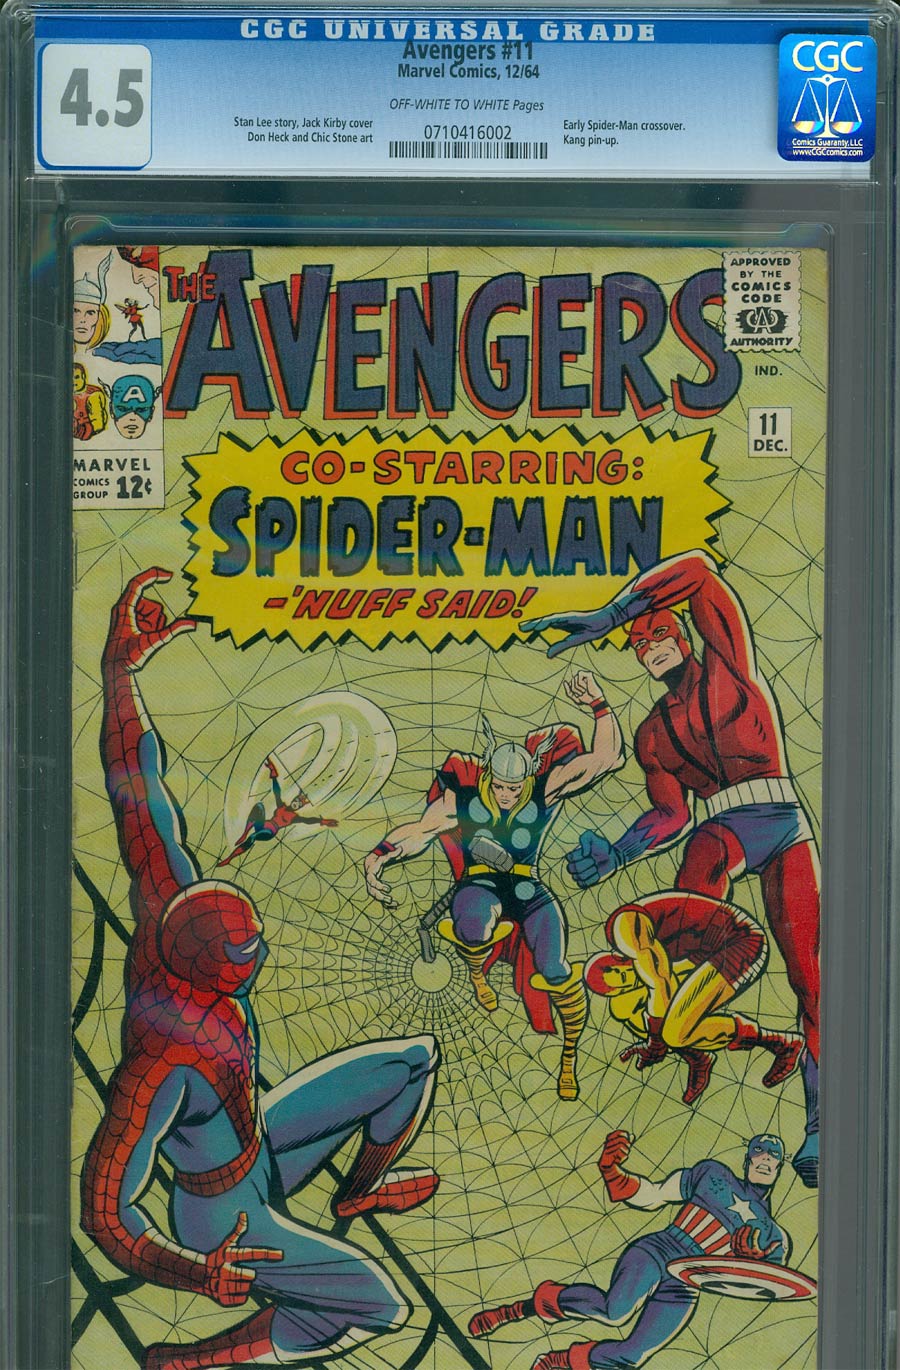 Avengers #11 Cover C CGC 4.5